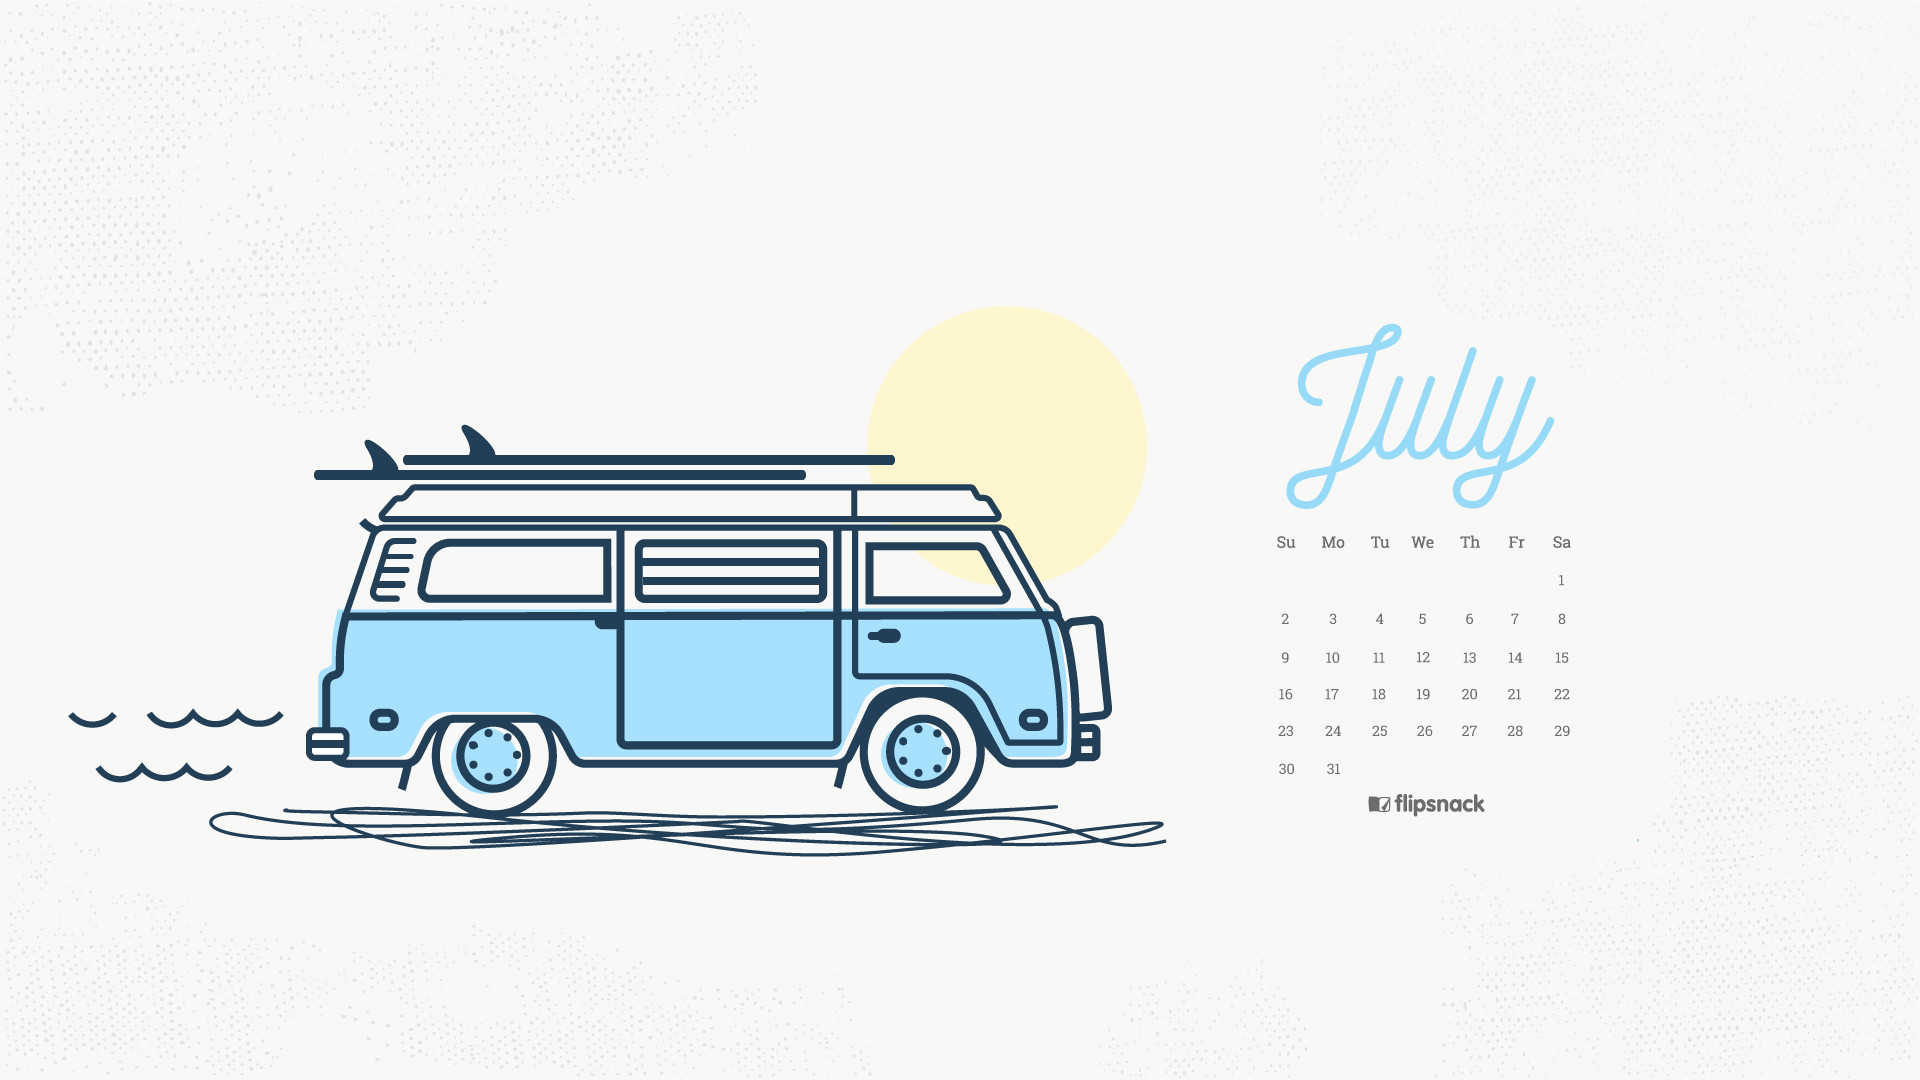 1920x1080 Desktop Wallpaper Calendar 2017 july 2017 calendar wallpaper for desktop  background